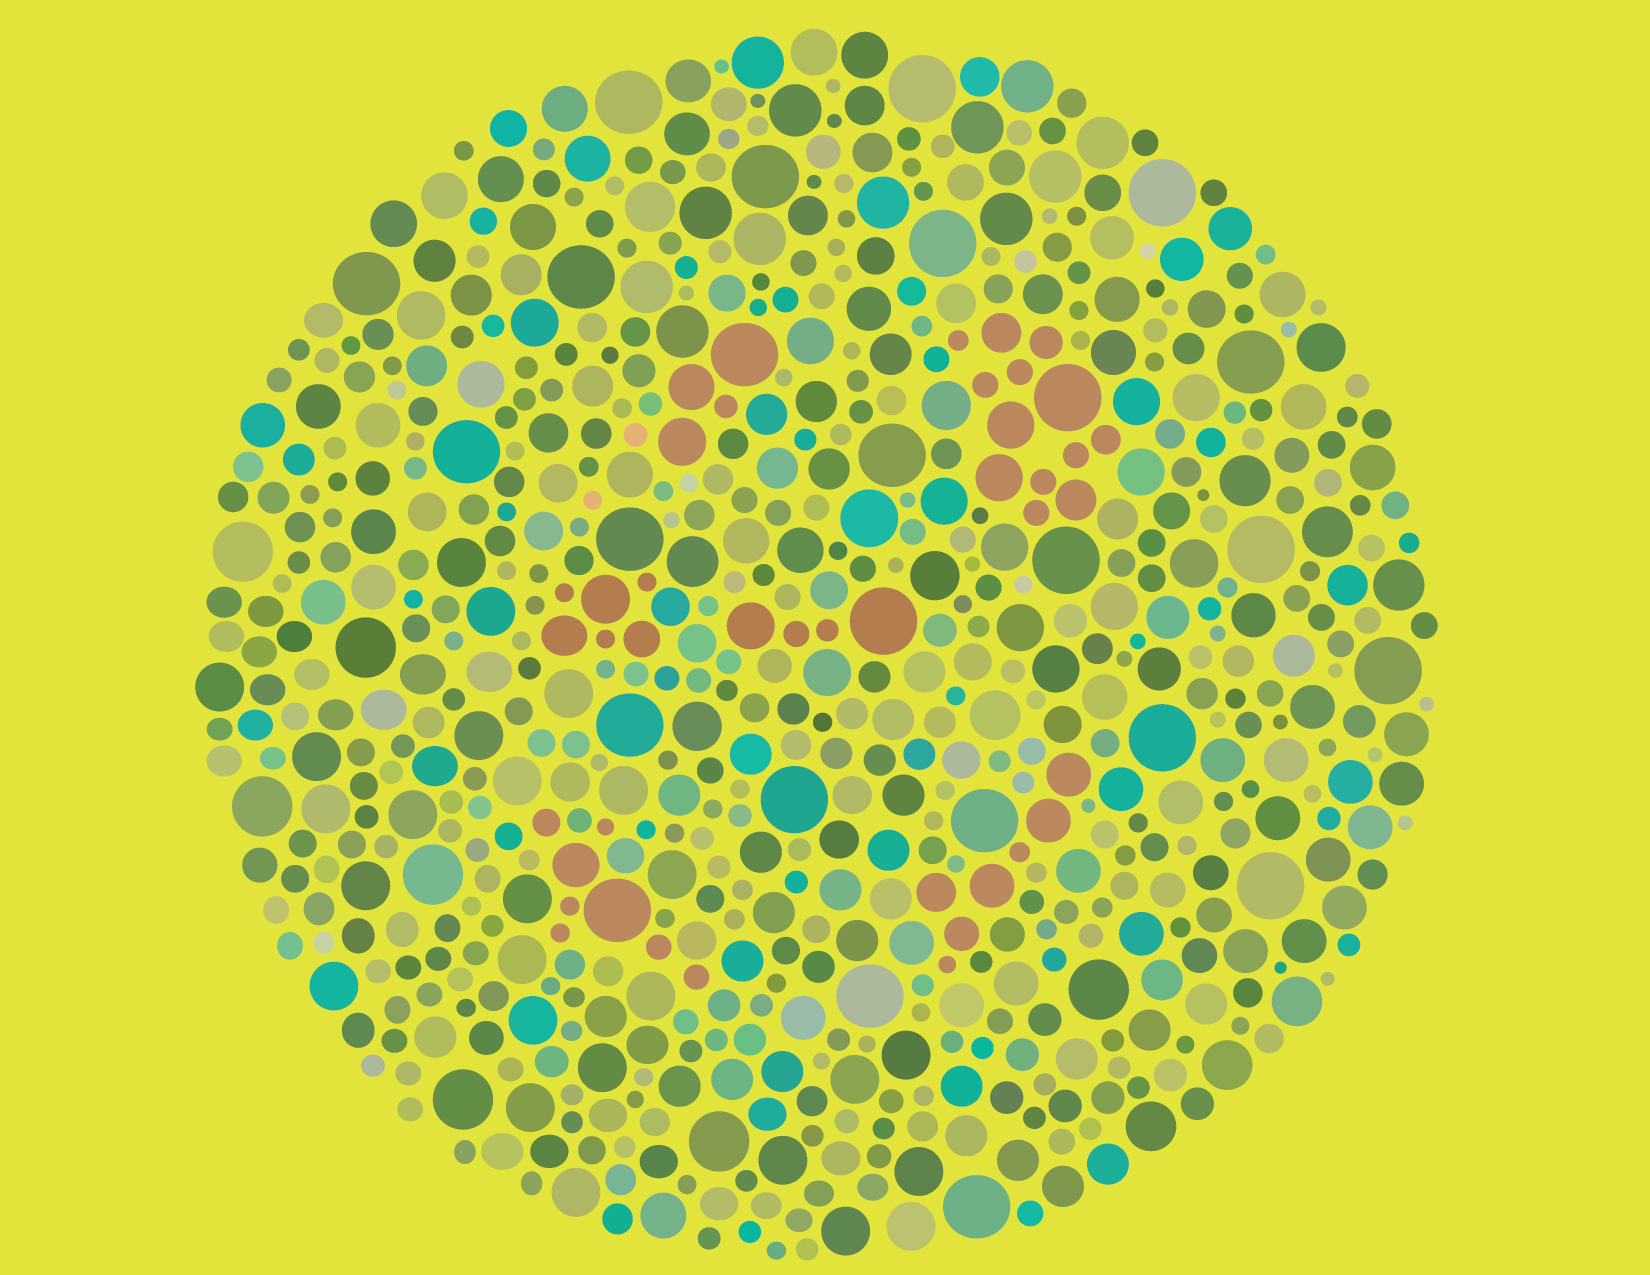 Reverse color blind test images.